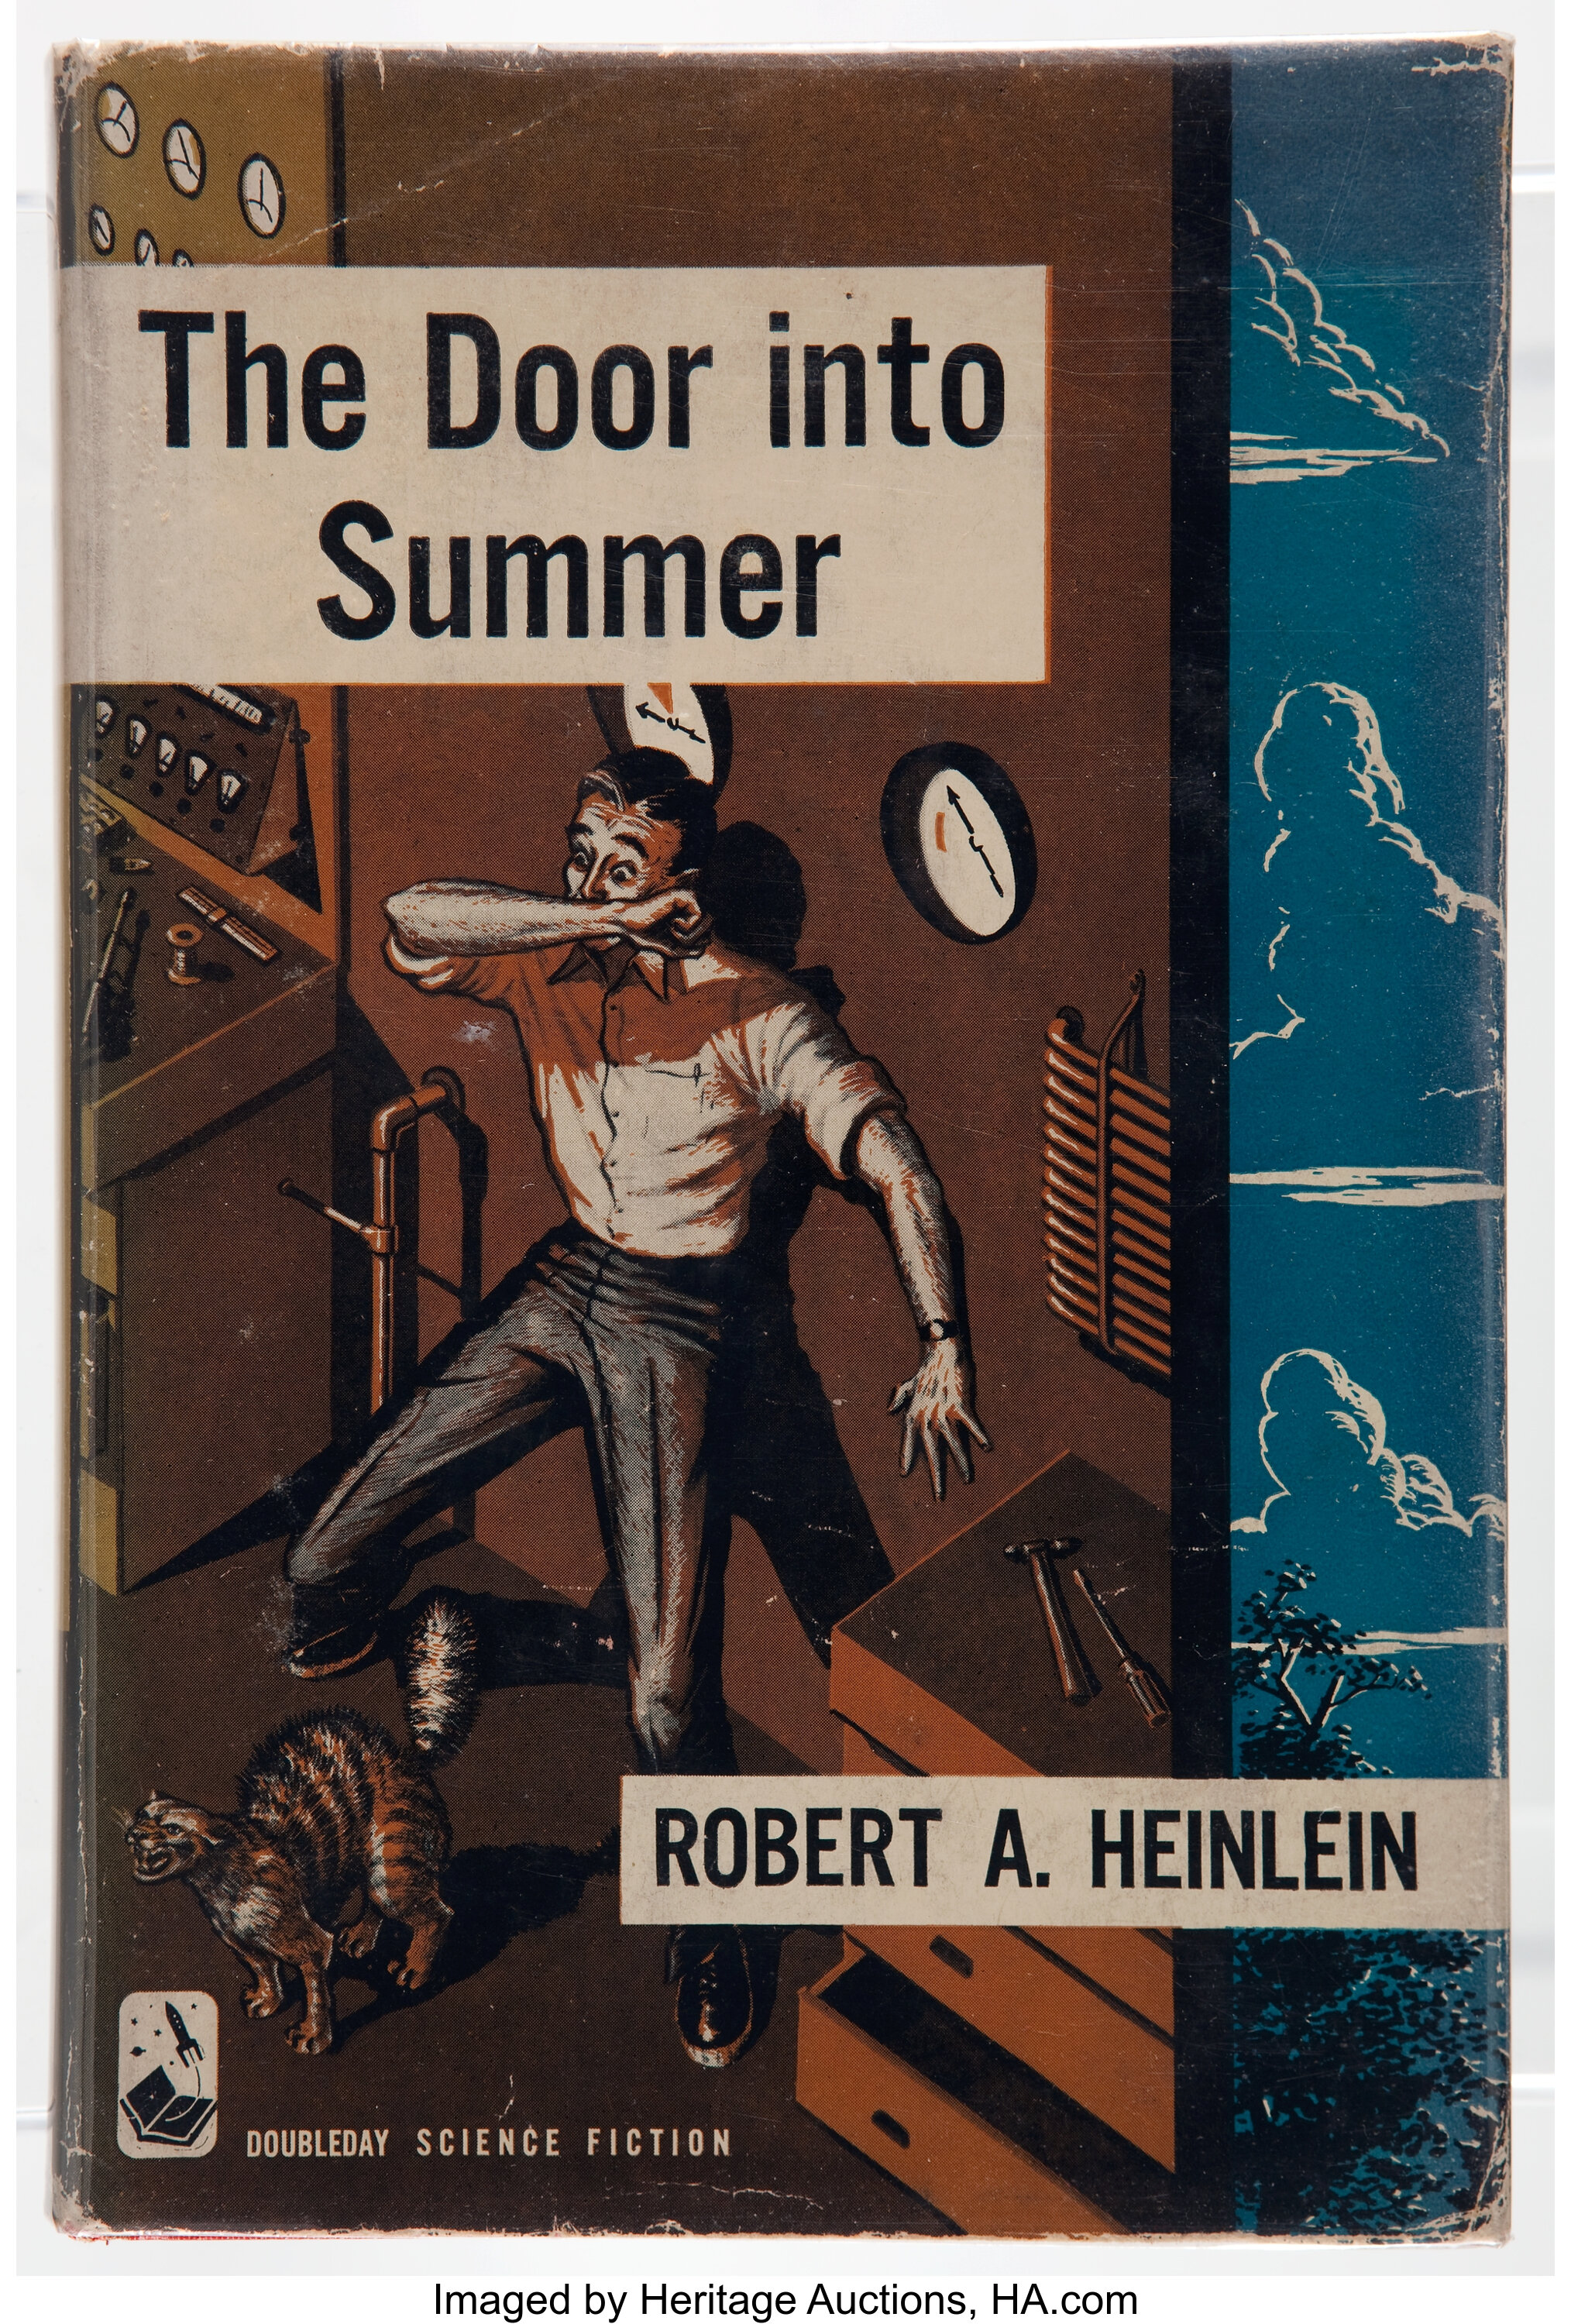 The Door into Summer - Wikipedia